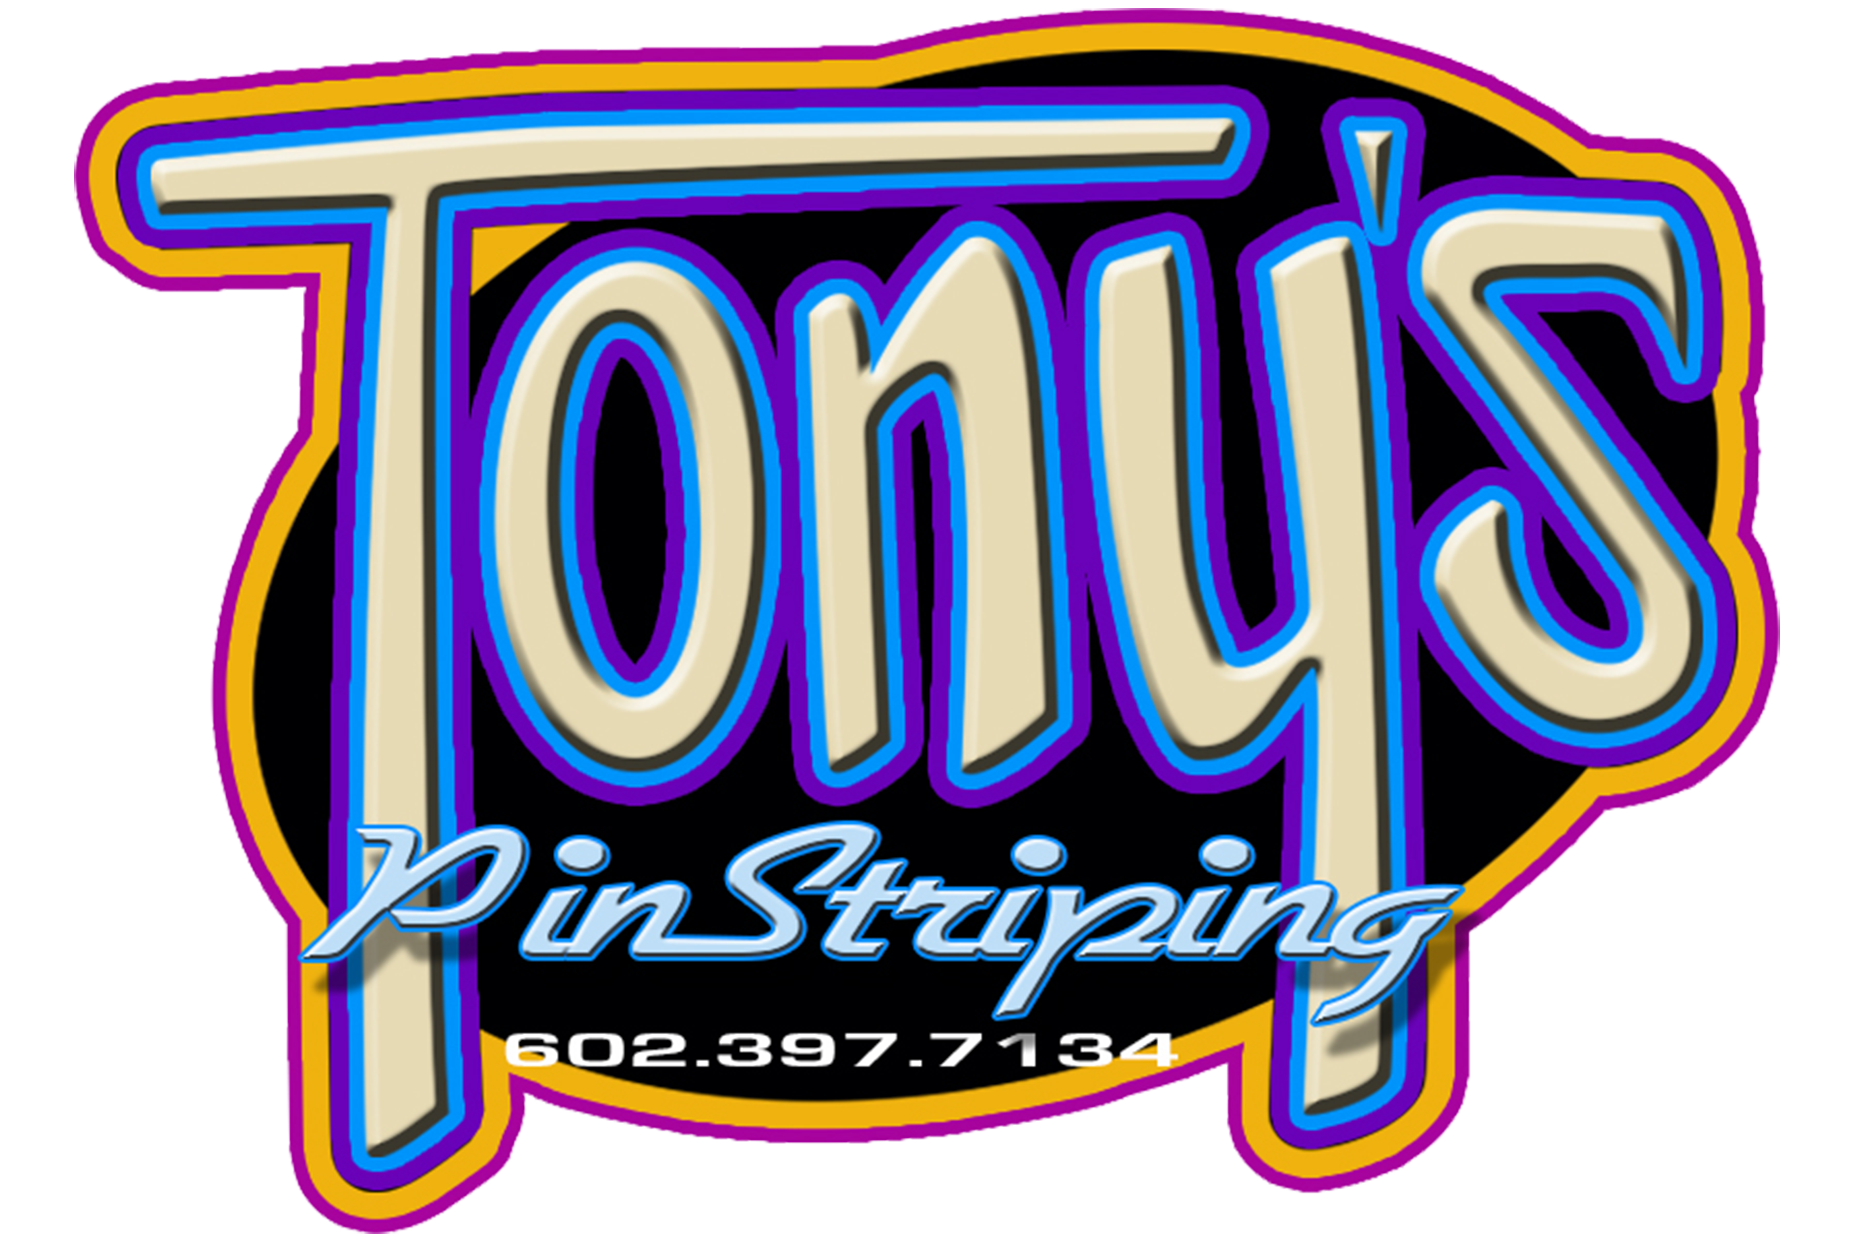 Tony's Pinstriping